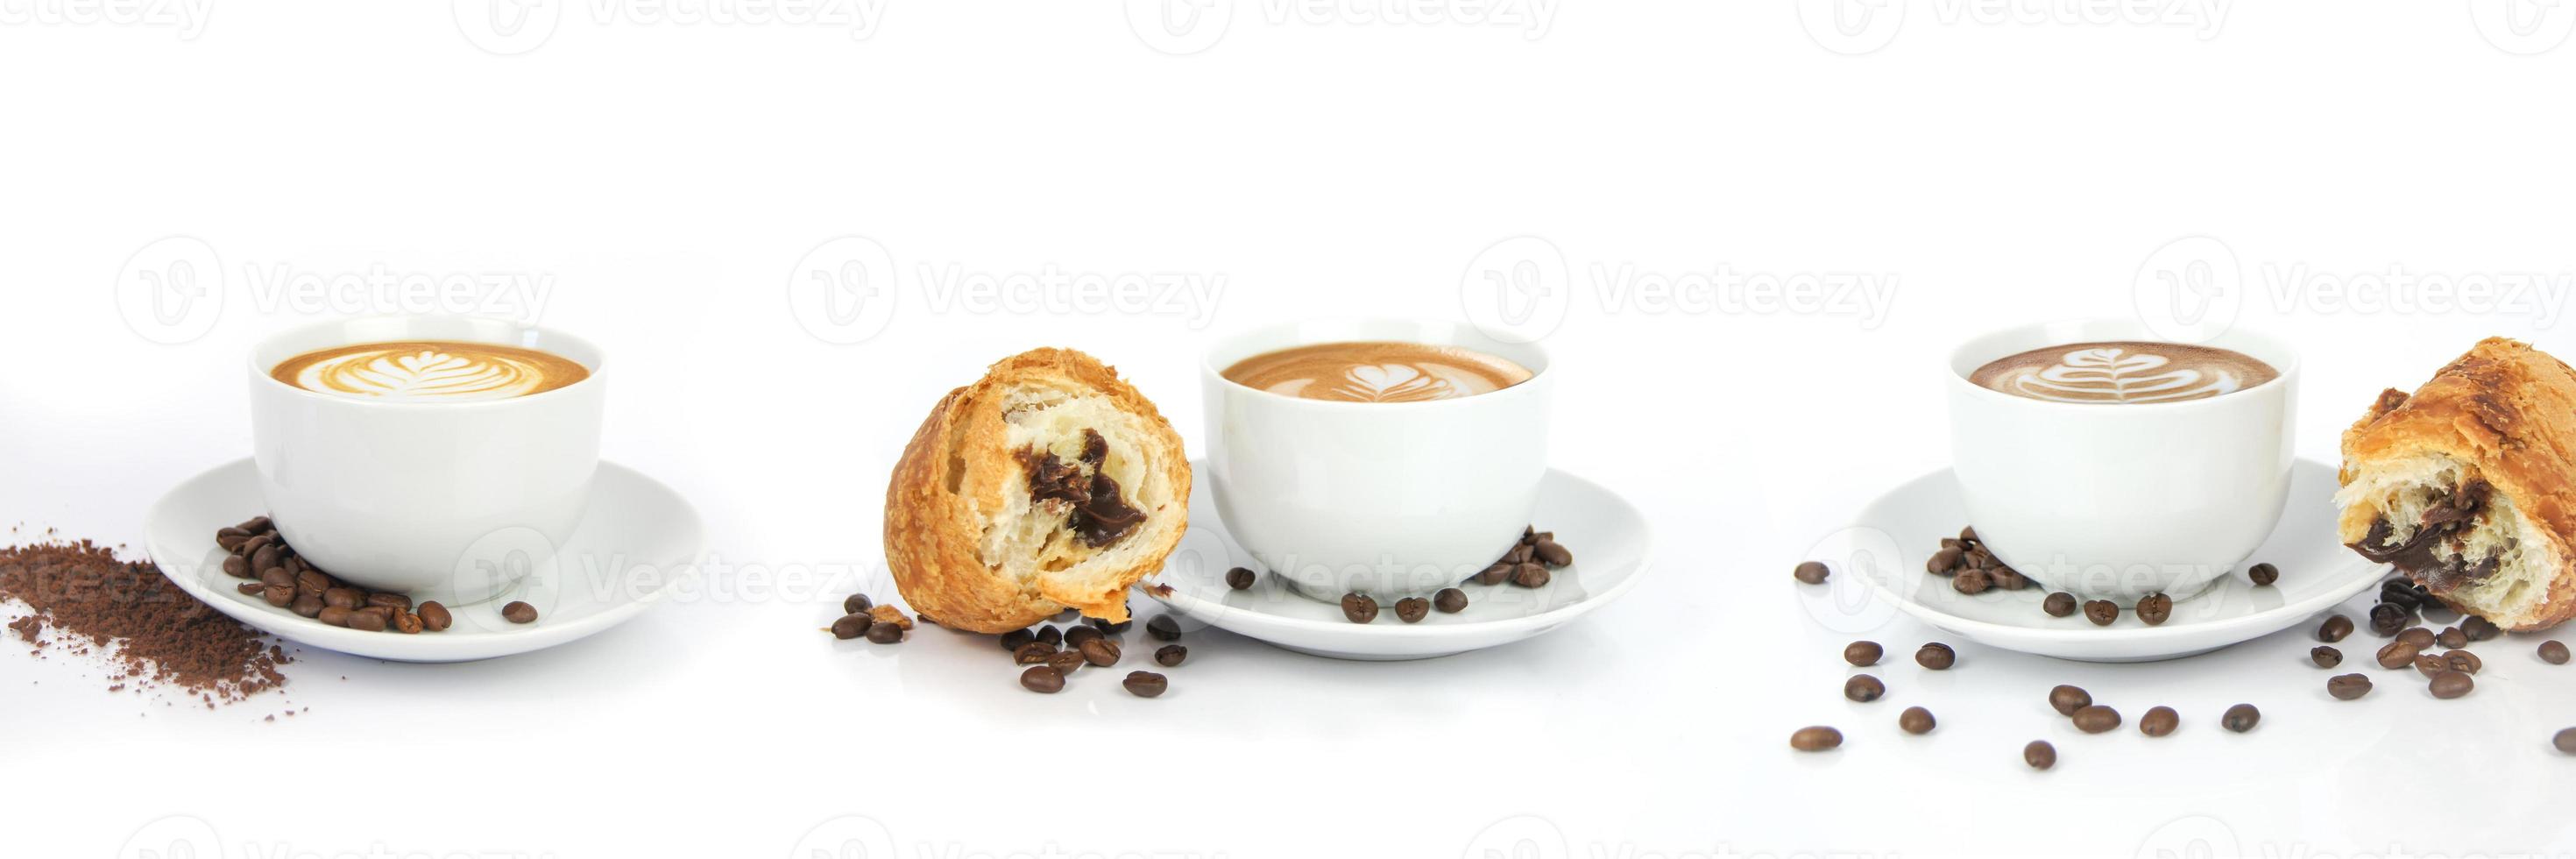 3 Tassen Kaffee auf weißen Tellern mit Café Latte und Croissants mit Schokolade, Kaffeesamen und Pulver auf weißem, isoliertem Hintergrund. Rendern Sie die Grafik, die im Studio erstellt wurde. foto